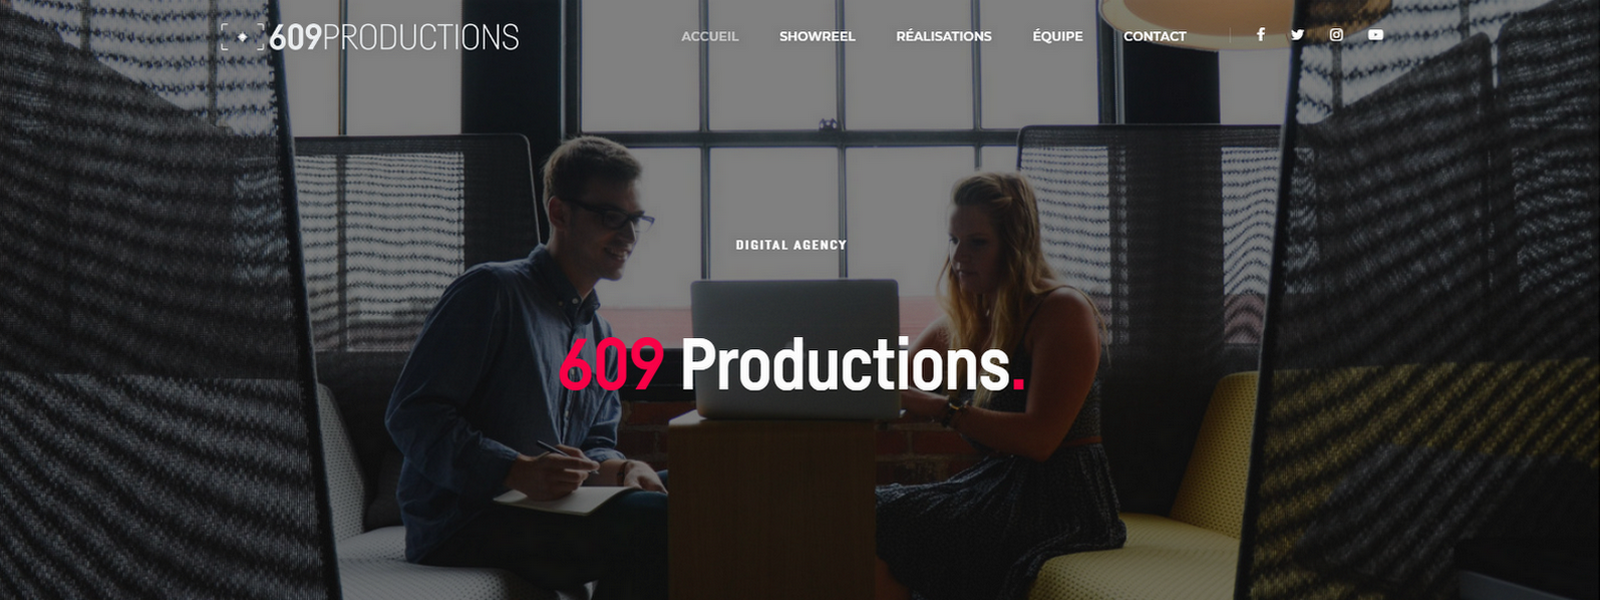 609 Productions - développé par Nity Pro